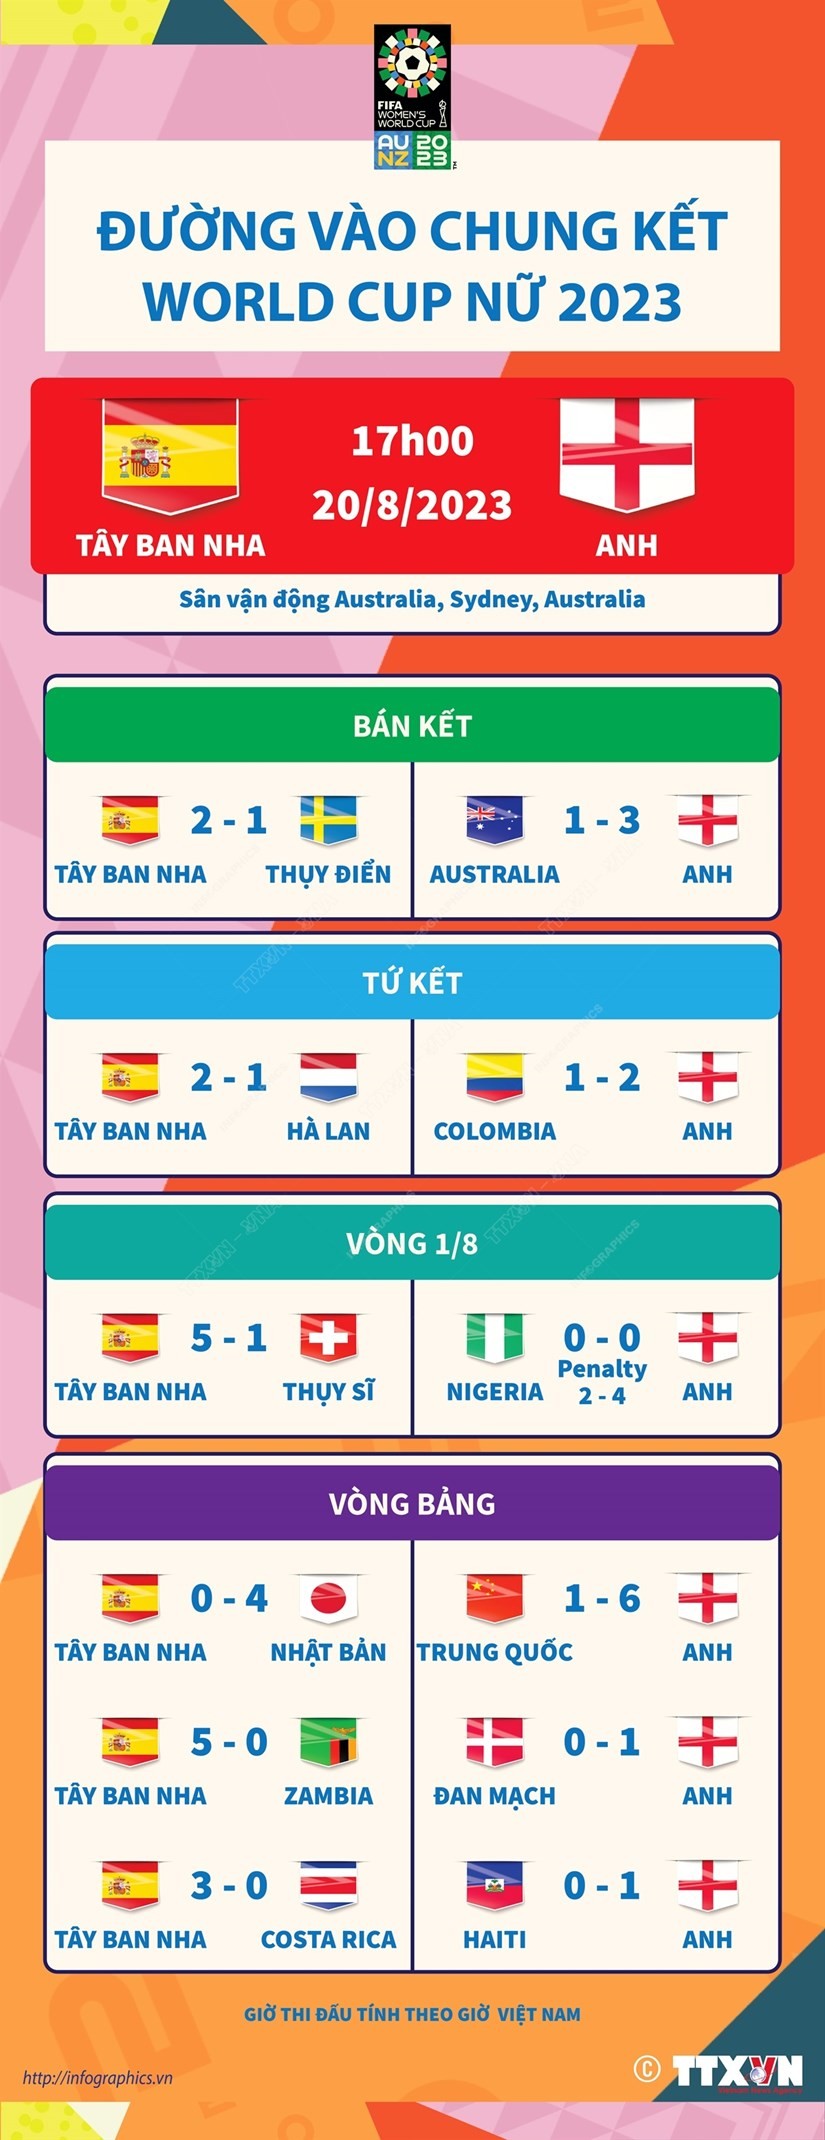 Tây Ban Nha hay Anh sẽ vô địch World Cup Nữ 2023?